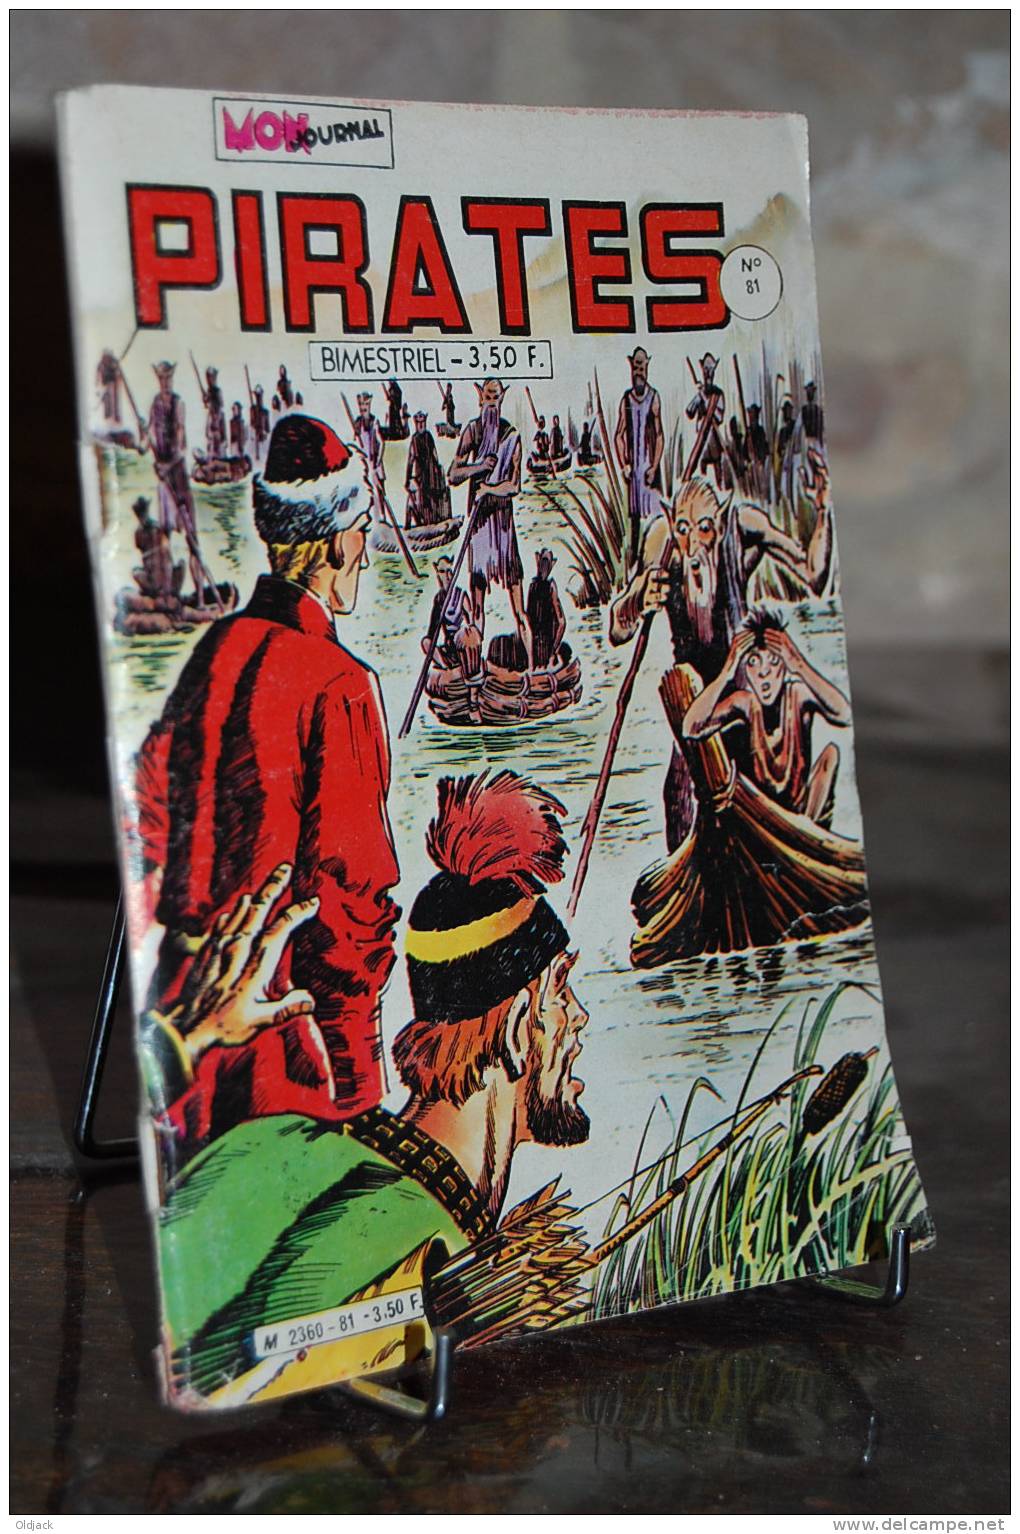 PIRATES N°81 (plato E) - Pirates